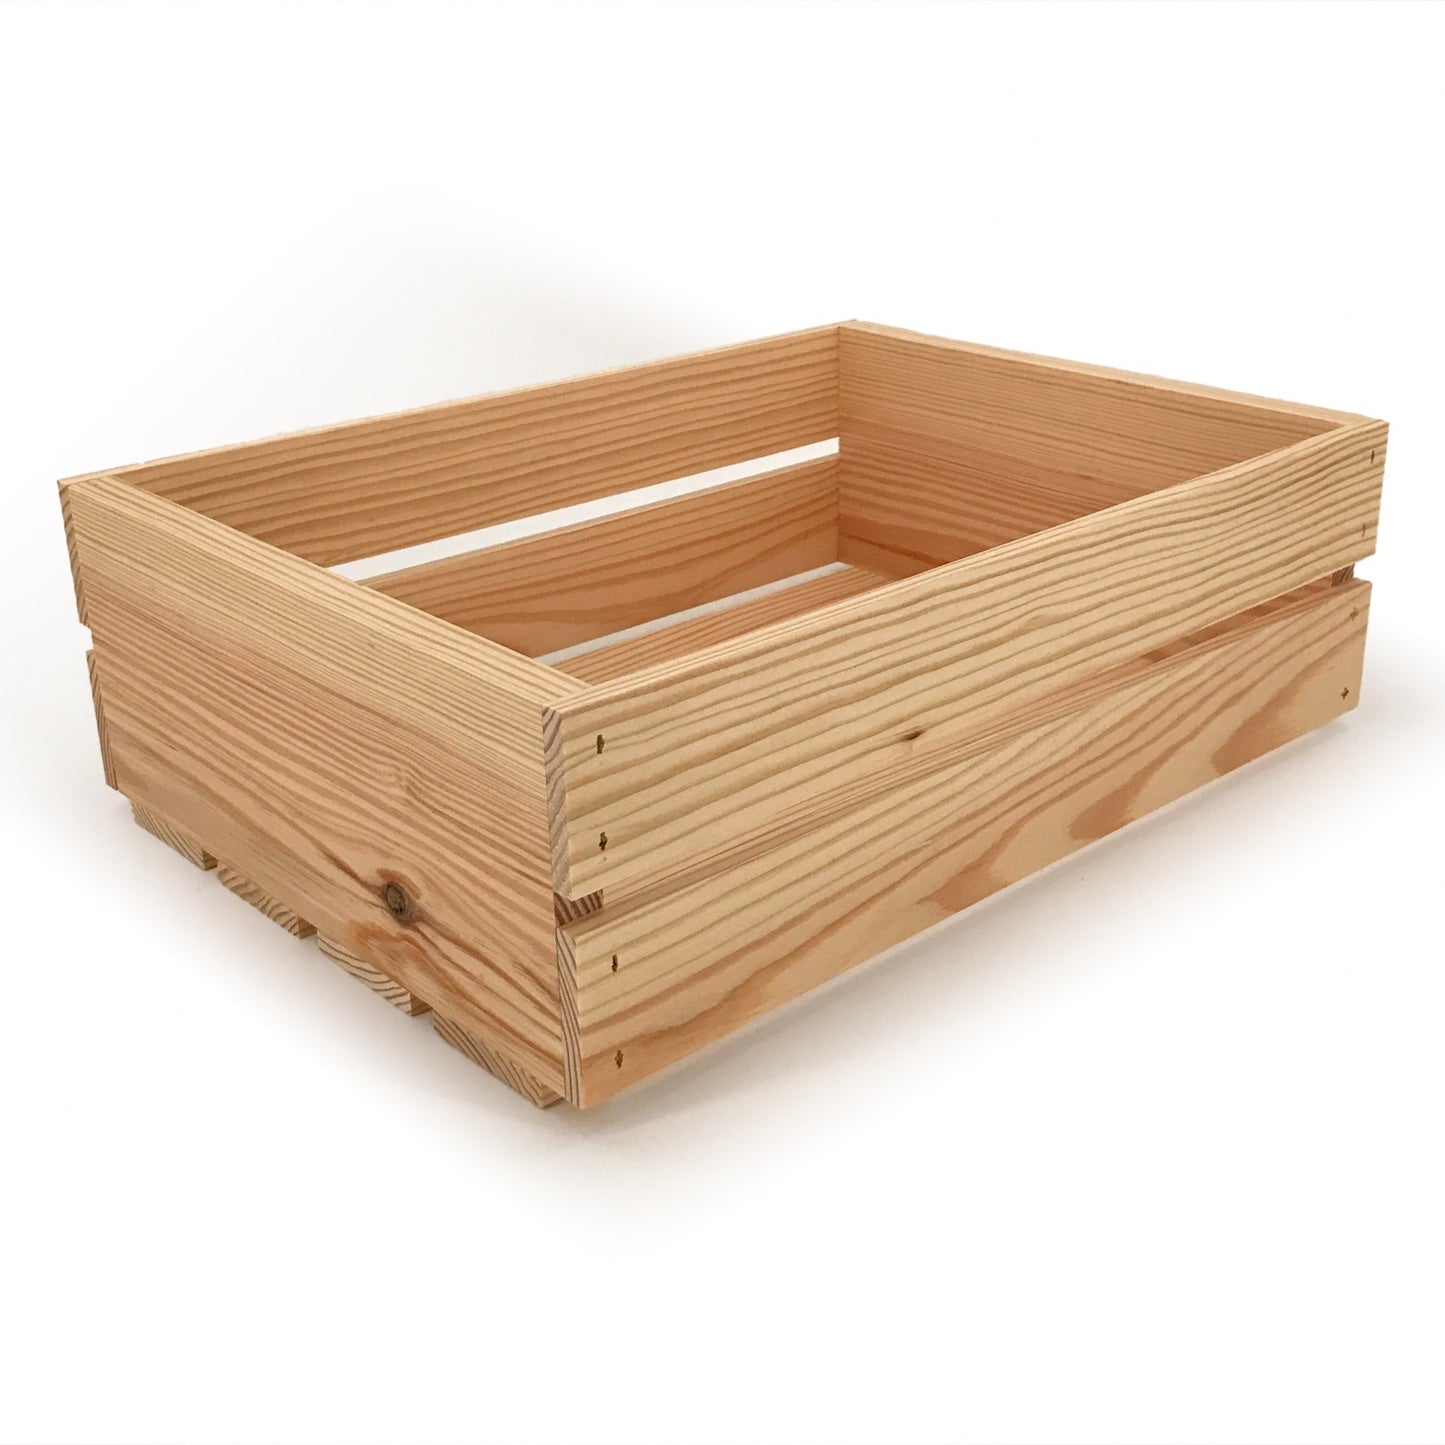 Small wooden crate 16x12x5.25, 6-WS-16-12-5.25-NX-NW-NL, 12-WS-16-12-5.25-NX-NW-NL, 24-WS-16-12-5.25-NX-NW-NL, 48-WS-16-12-5.25-NX-NW-NL, 96-WS-16-12-5.25-NX-NW-NL